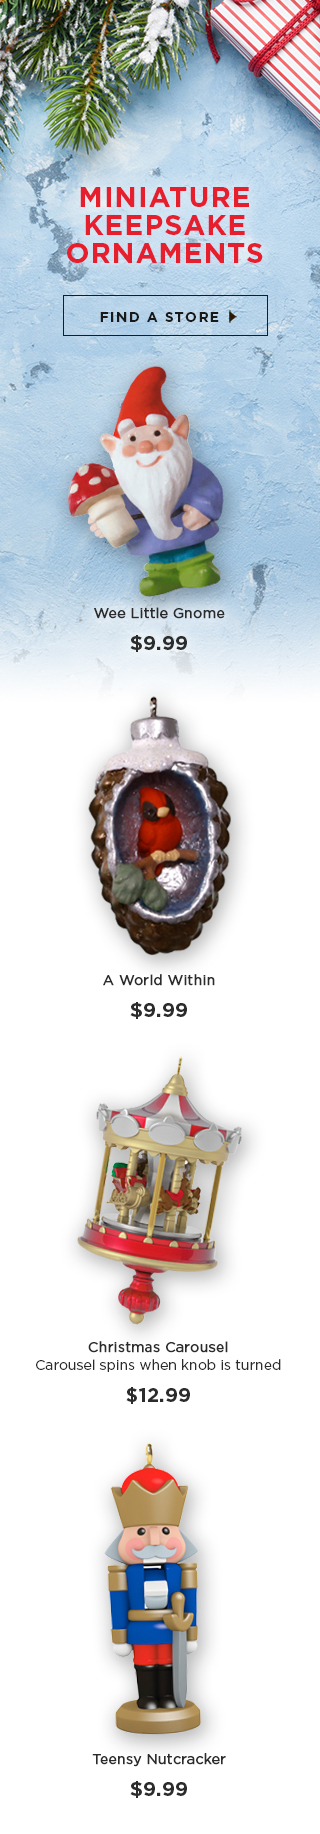 Miniature Keepsake Ornaments - $9.99 - $12.99